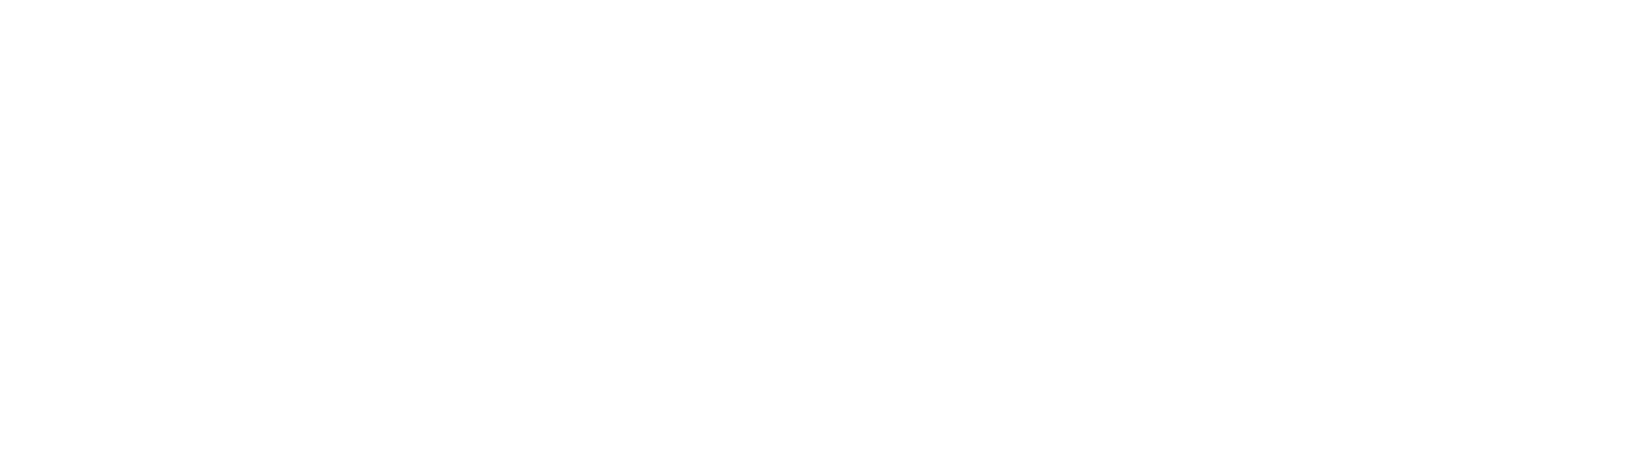 IGM Biosciences logo large for dark backgrounds (transparent PNG)